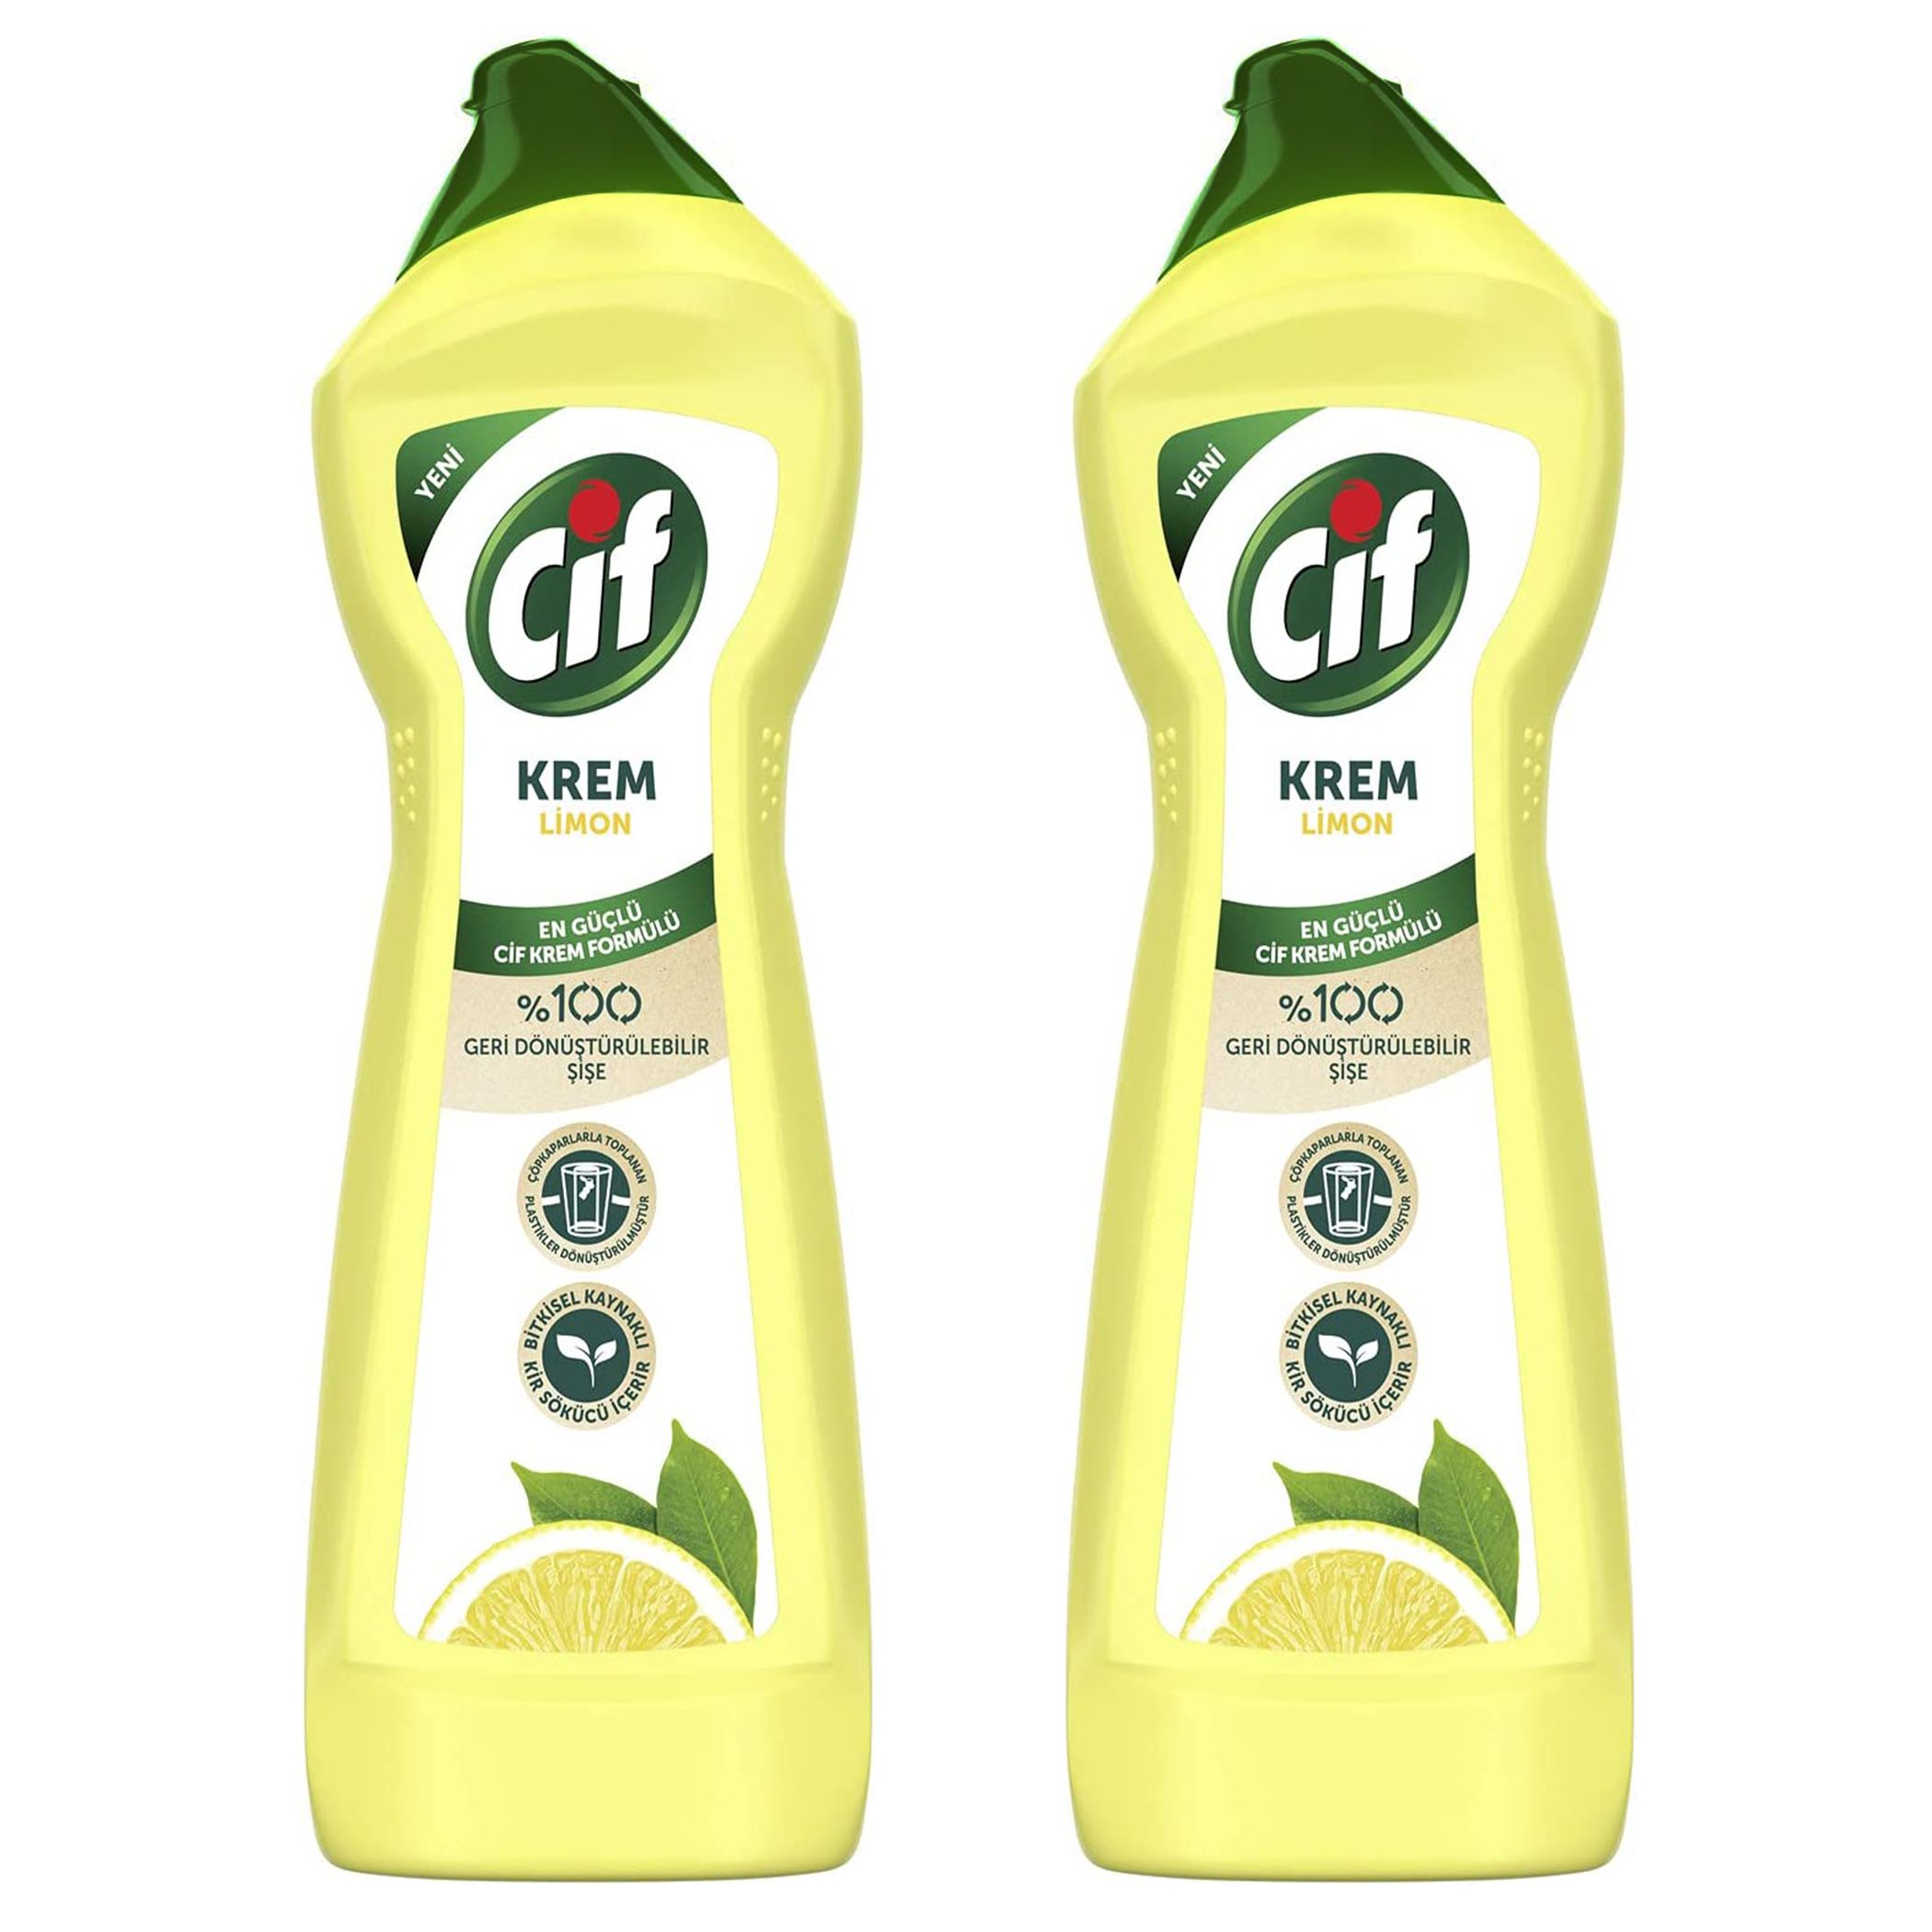 Cif Cream Cleaner Lemon (750 ml) - CKA500